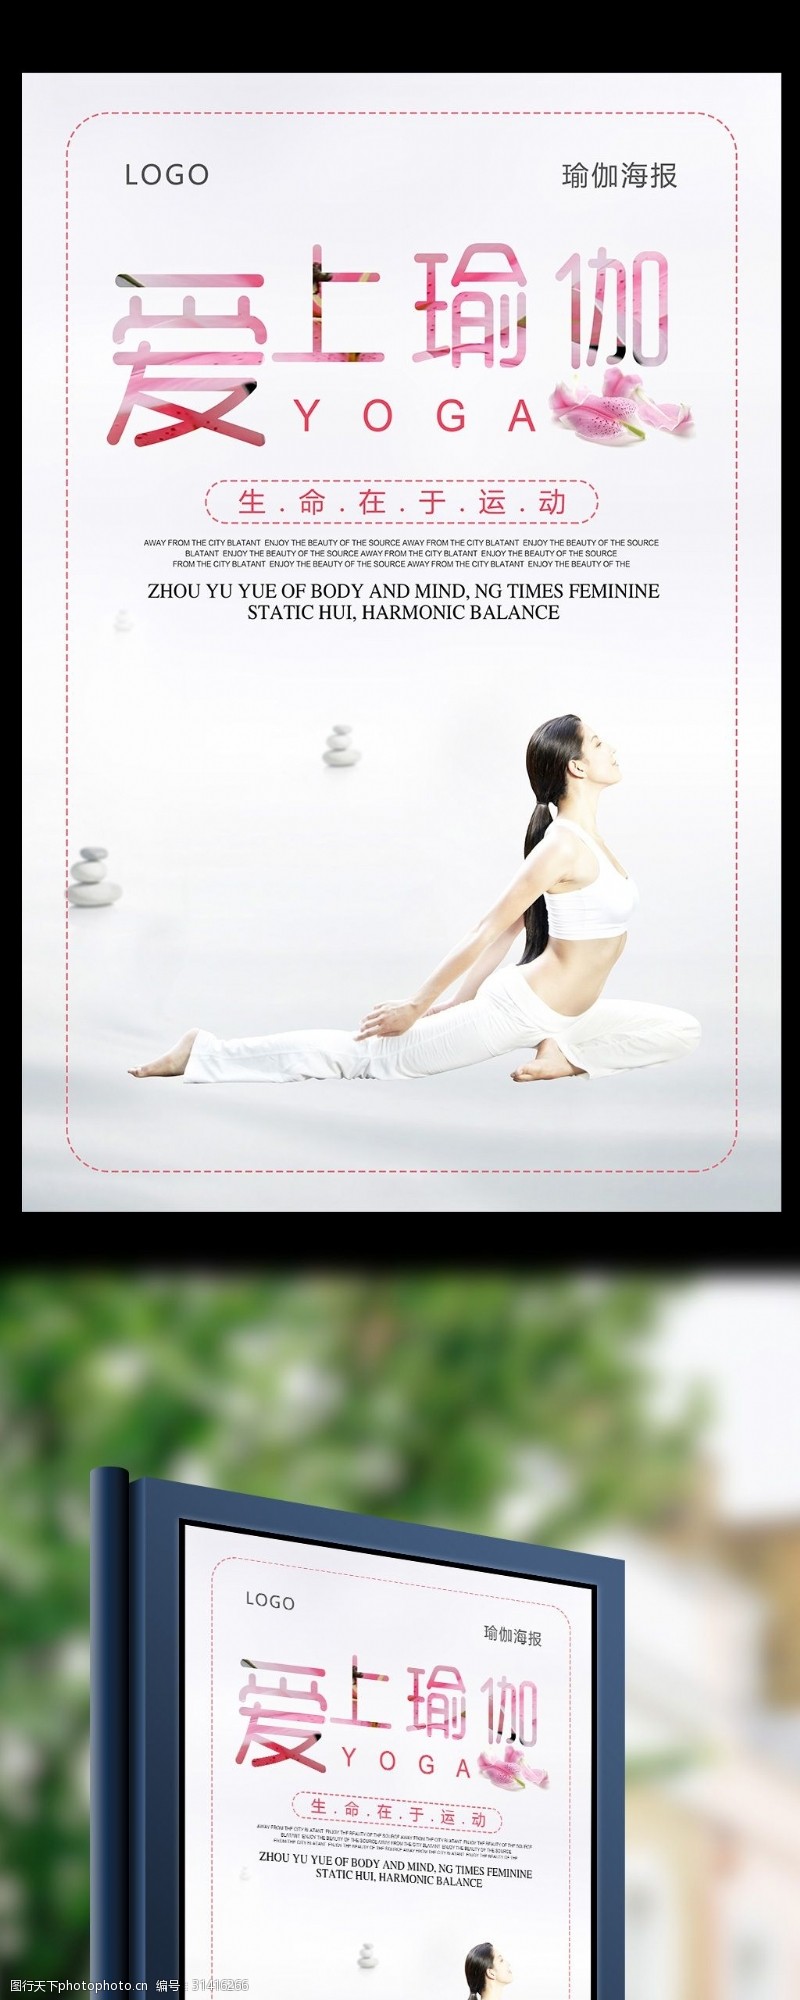 瑜伽中心爱上瑜伽体育海报设计